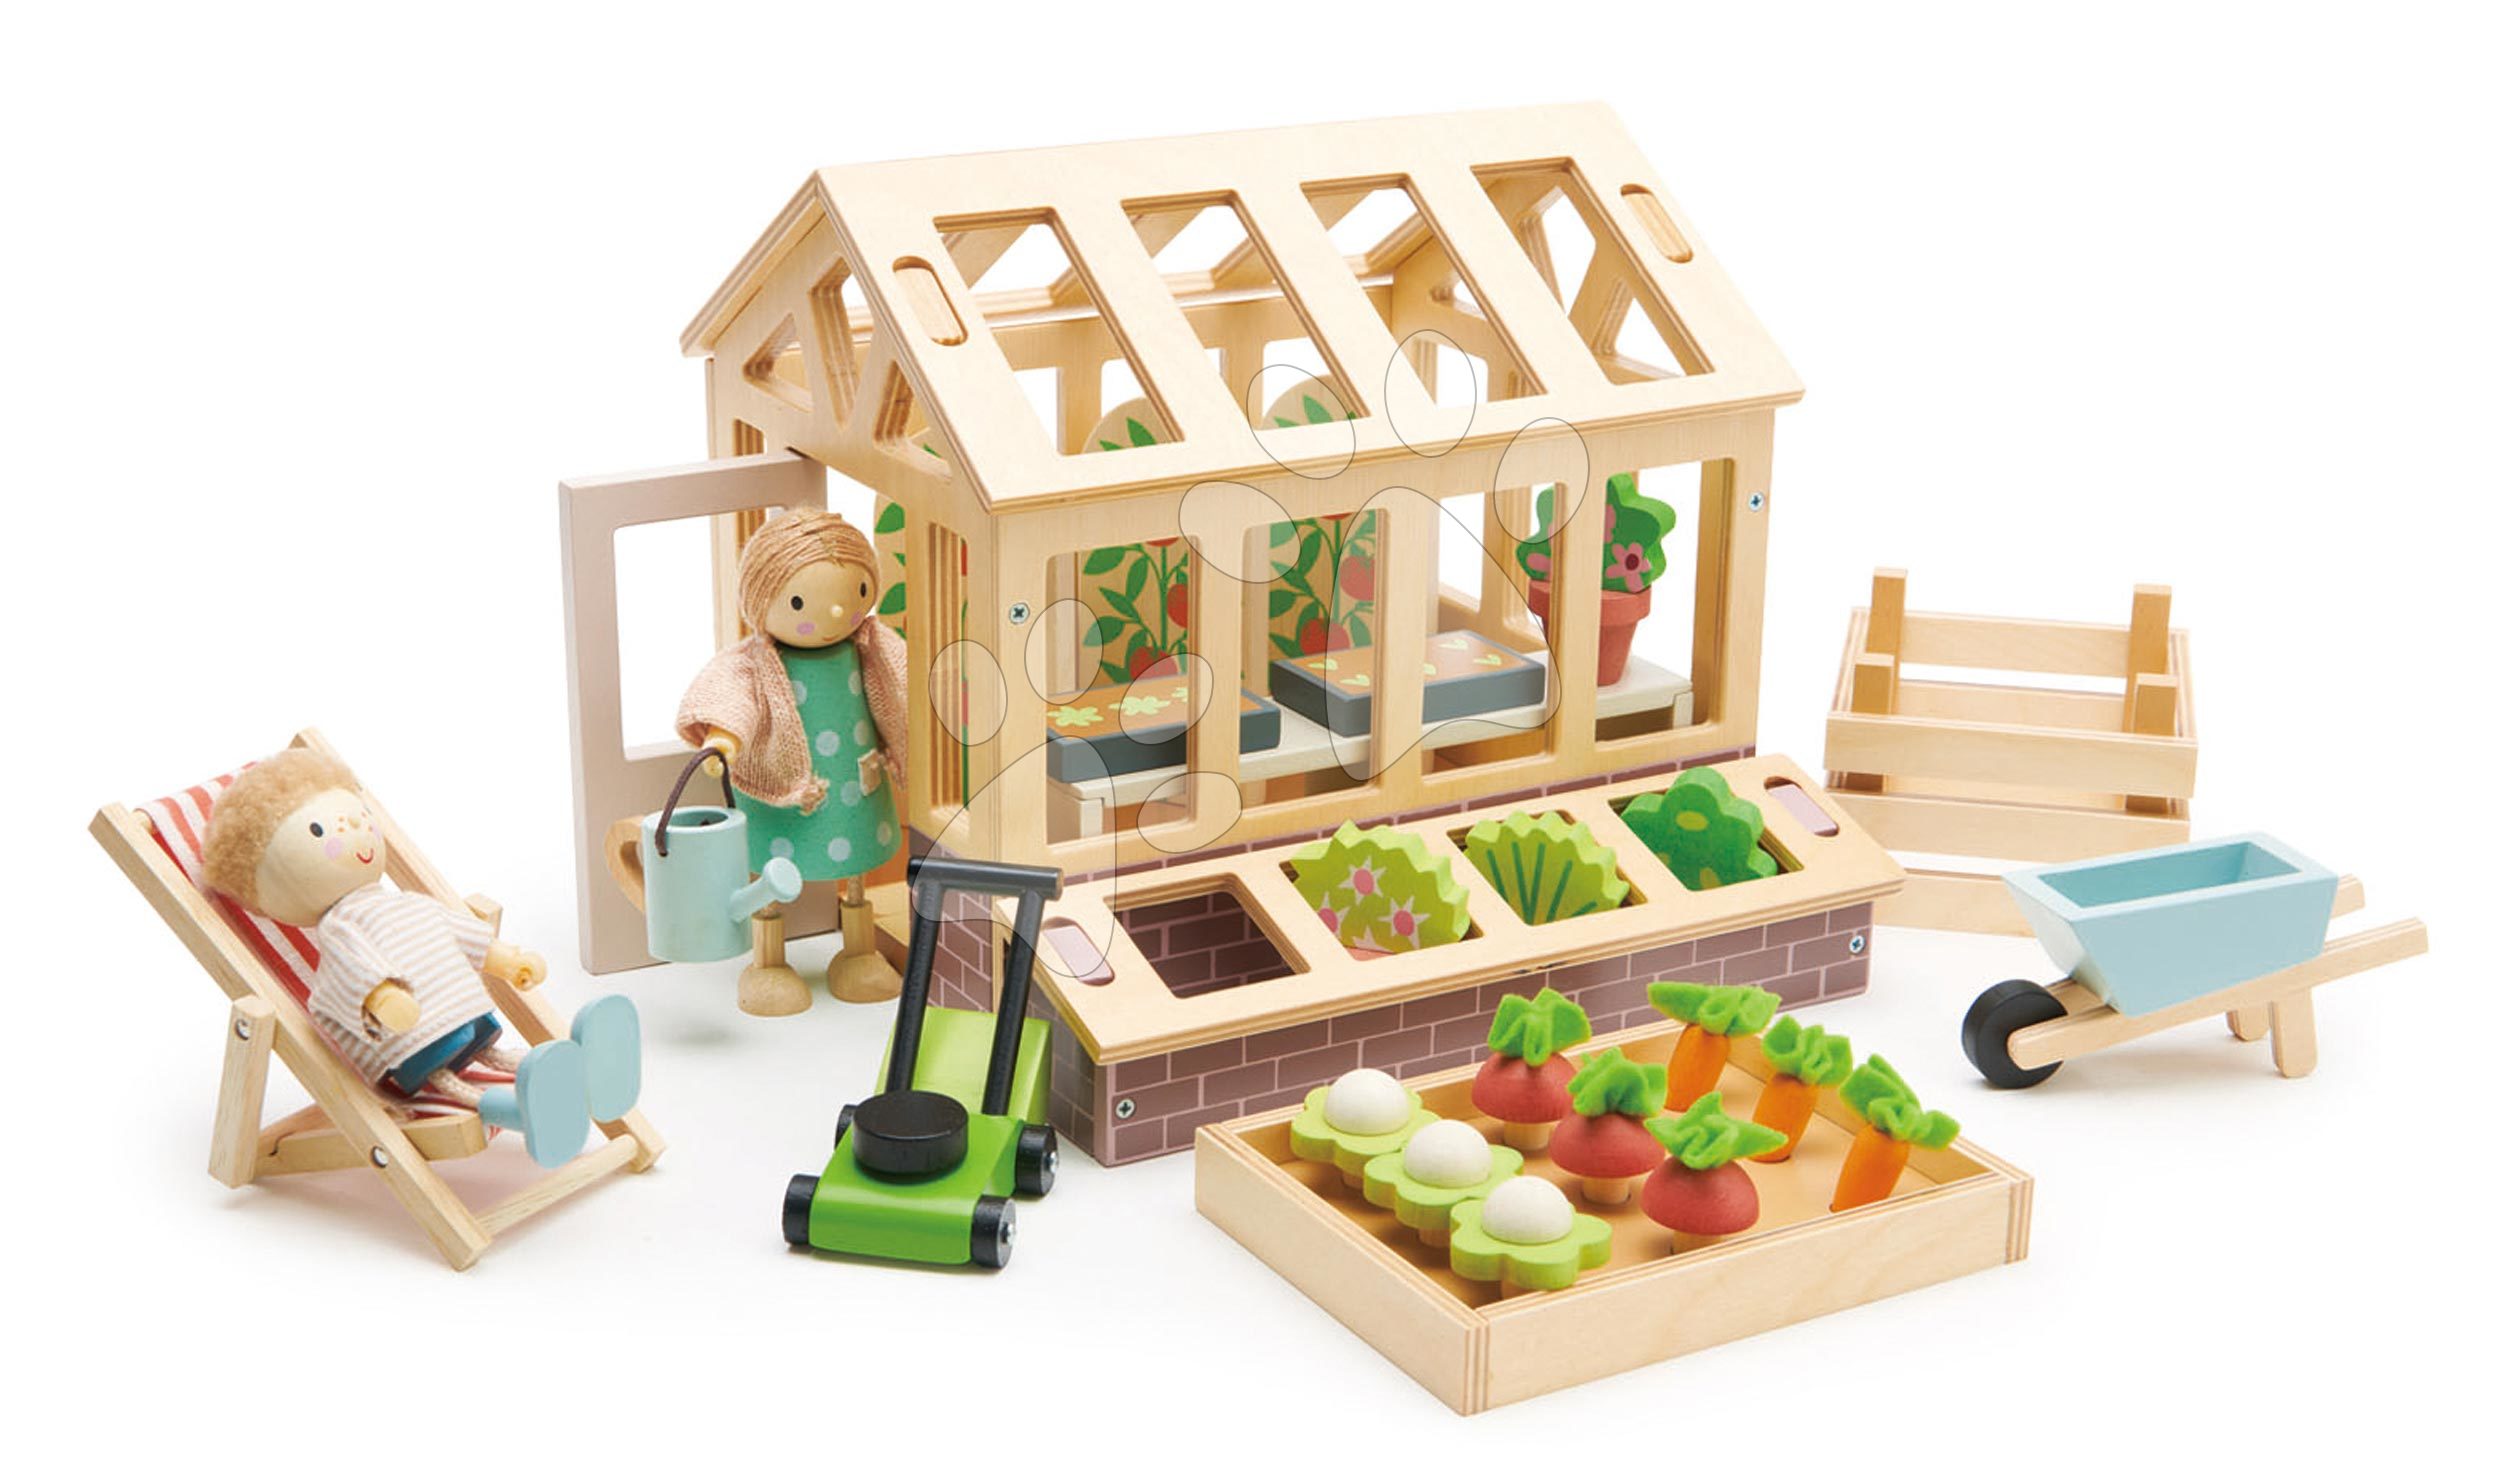 Drevený skleník Greenhouse and Garden Set Tender Leaf Toys s otváracou strechou a 9 druhov zeleniny pre bábiku